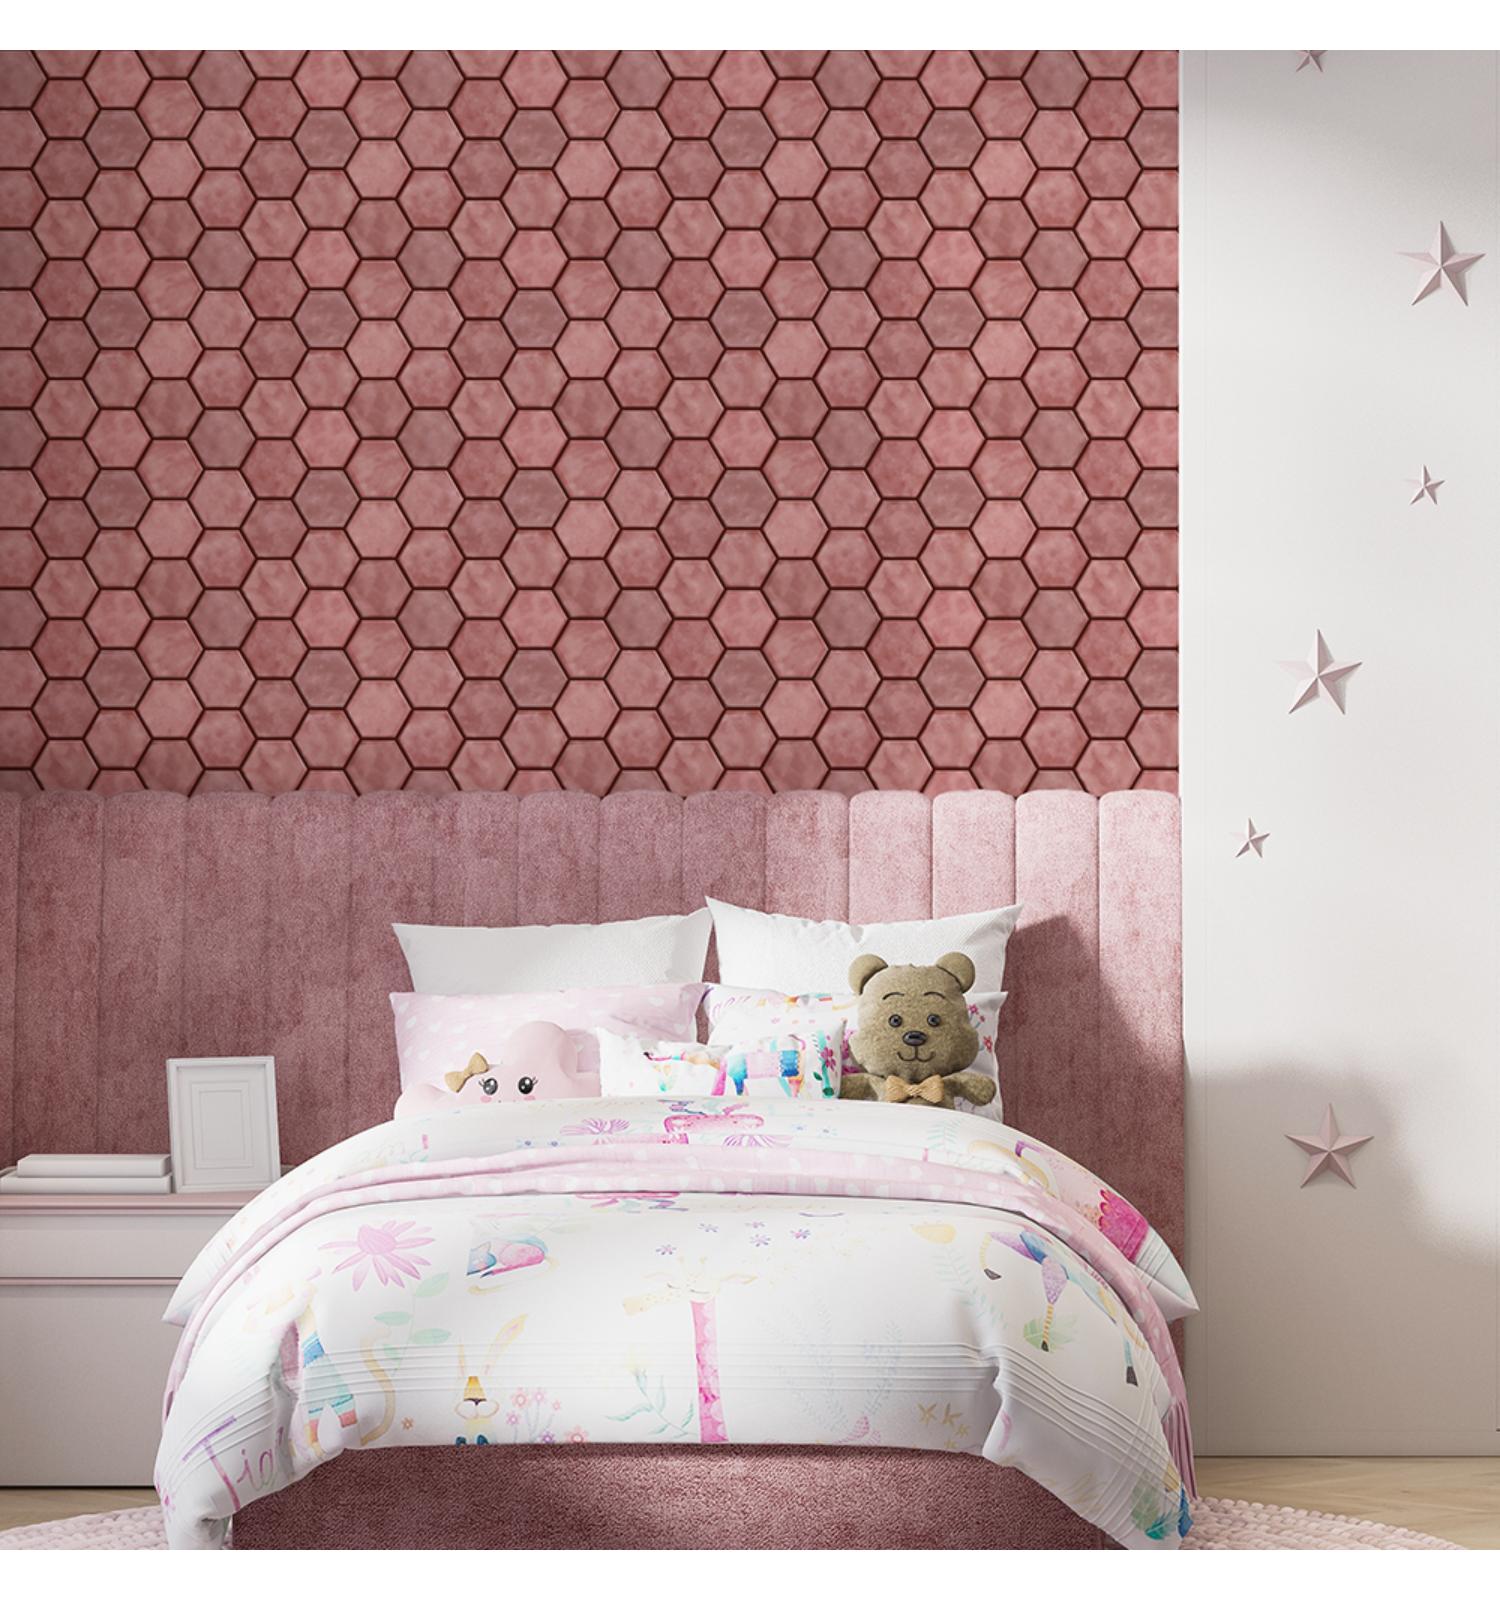 Pink Peel and Stick Backsplash Tiles | Kitchen Backsplash Tiles